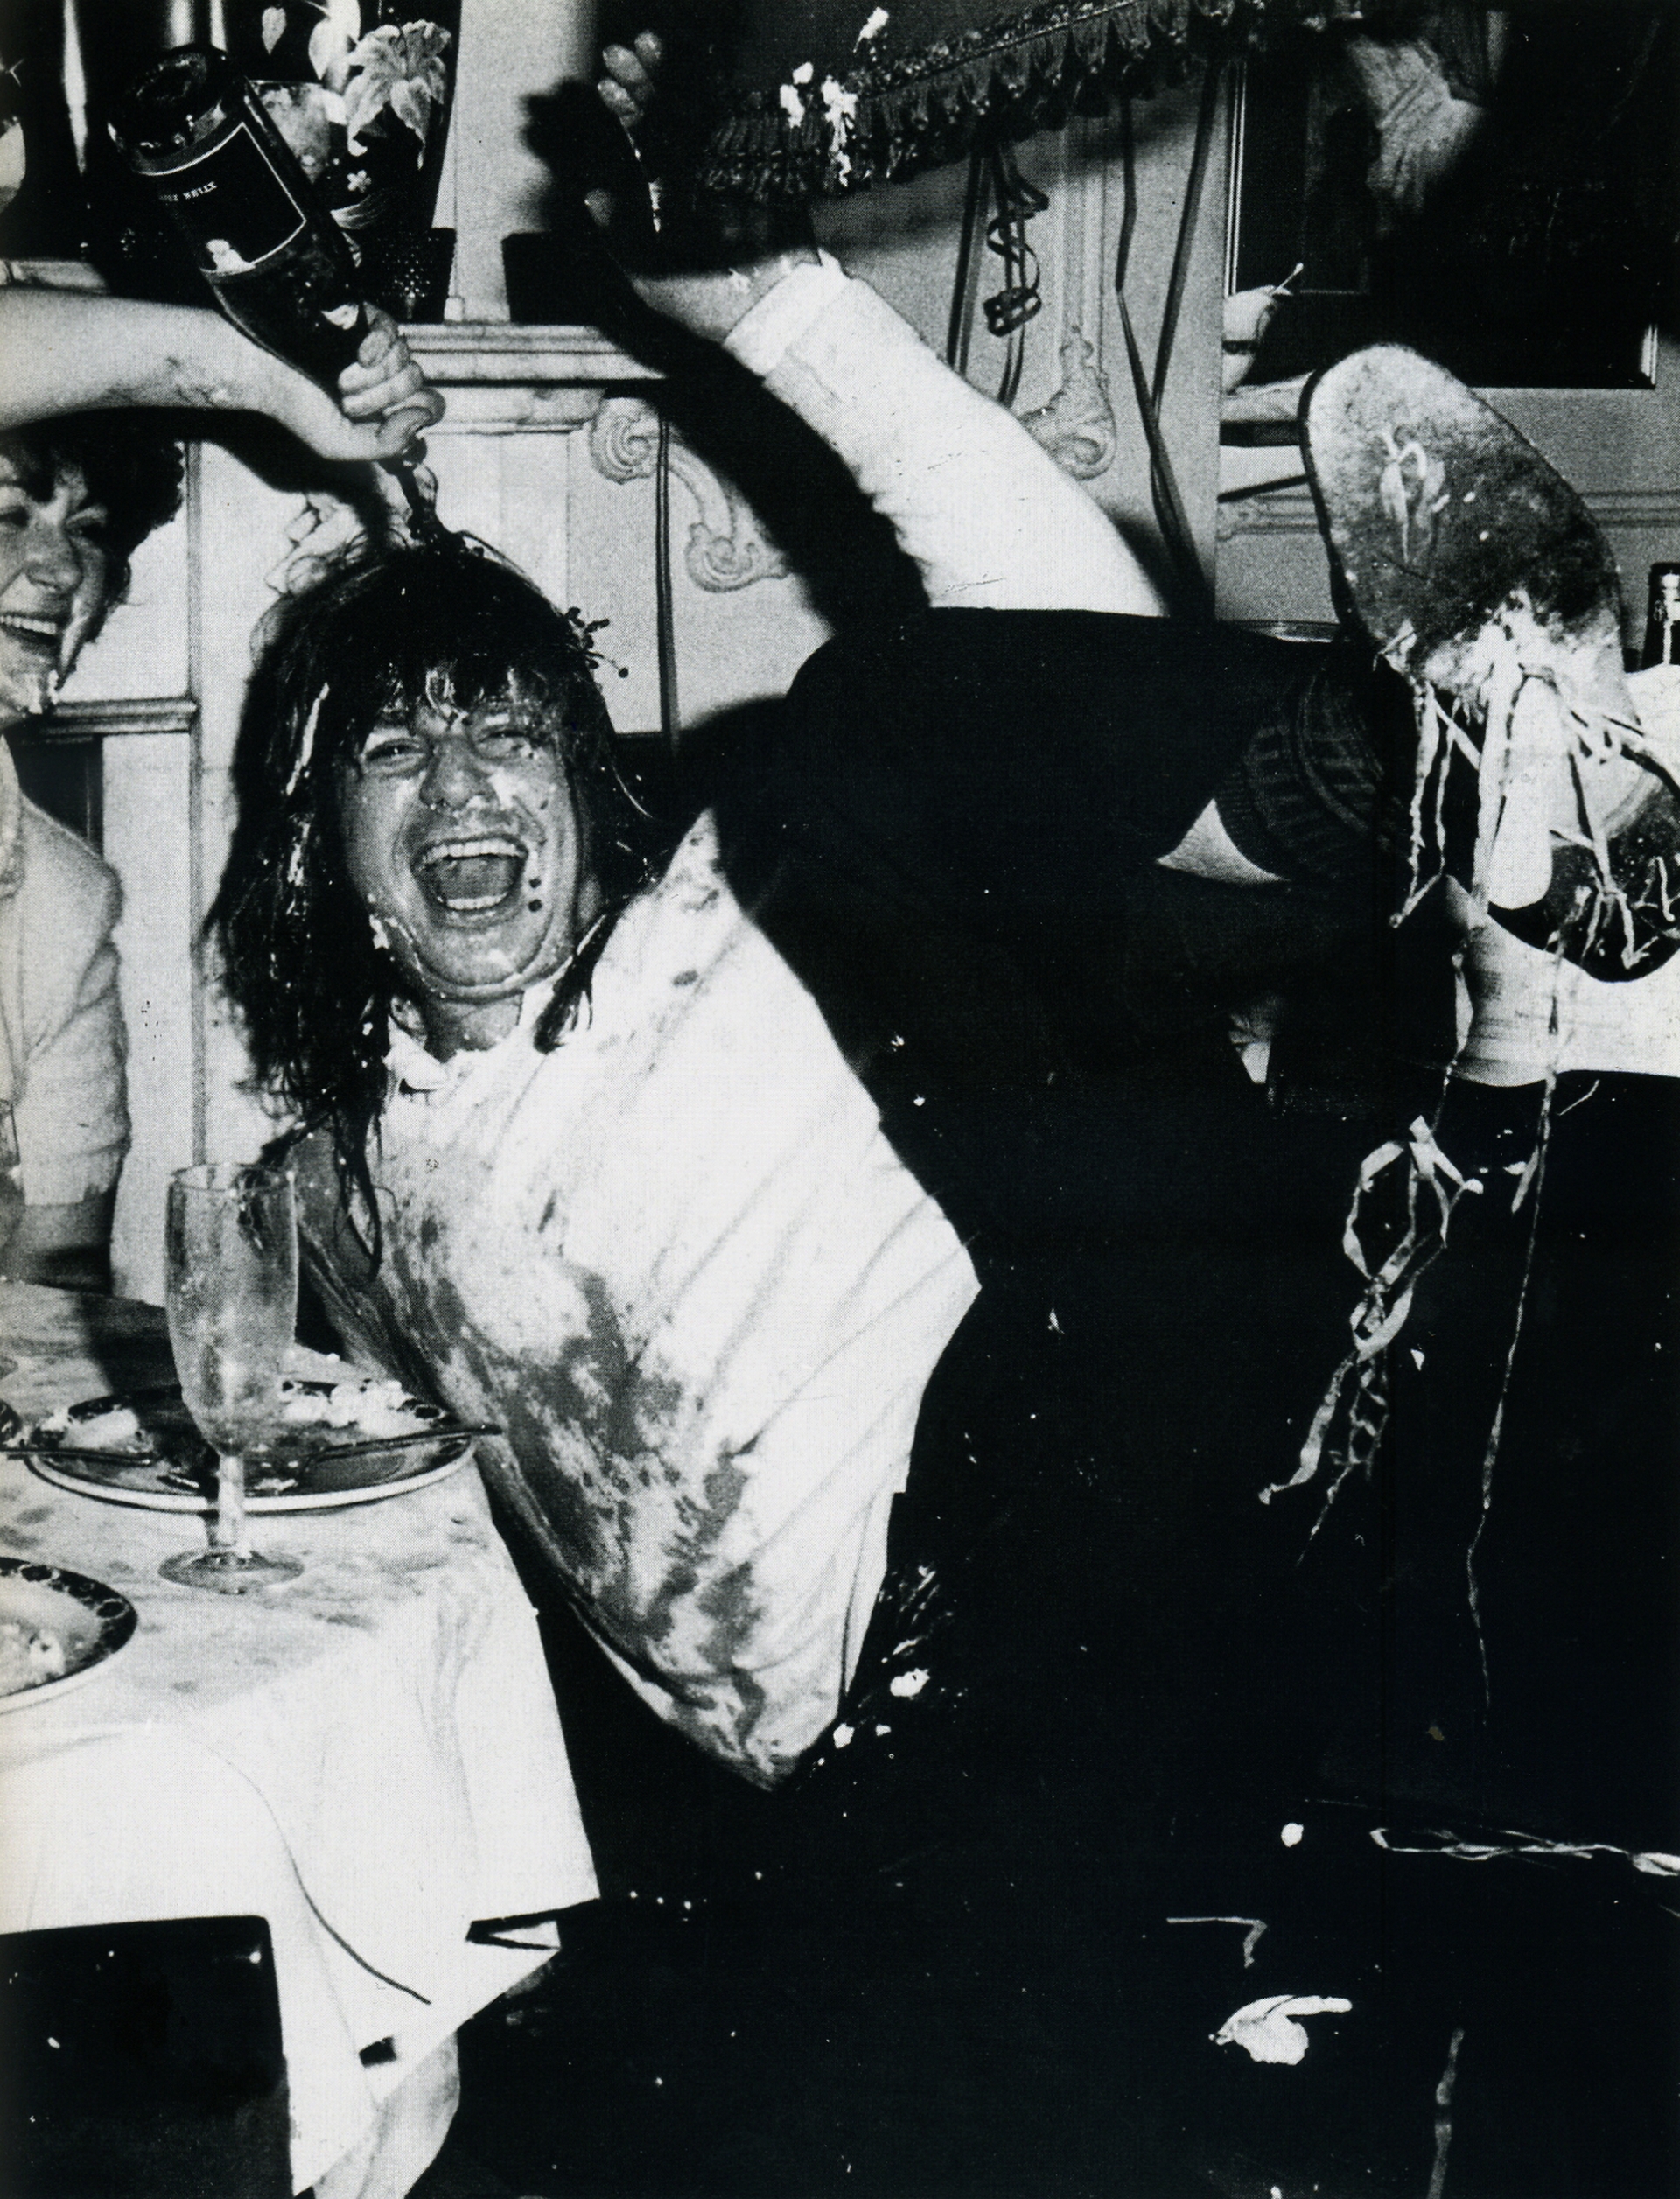 Ο Ozzy Osbourne βαφτίζεται στο αλκοόλ και ούτε που θέλω να πάθω τι είναι αυτά που κρέμονται από τη σόλα του παπουτσιού του (Tony Harrison)